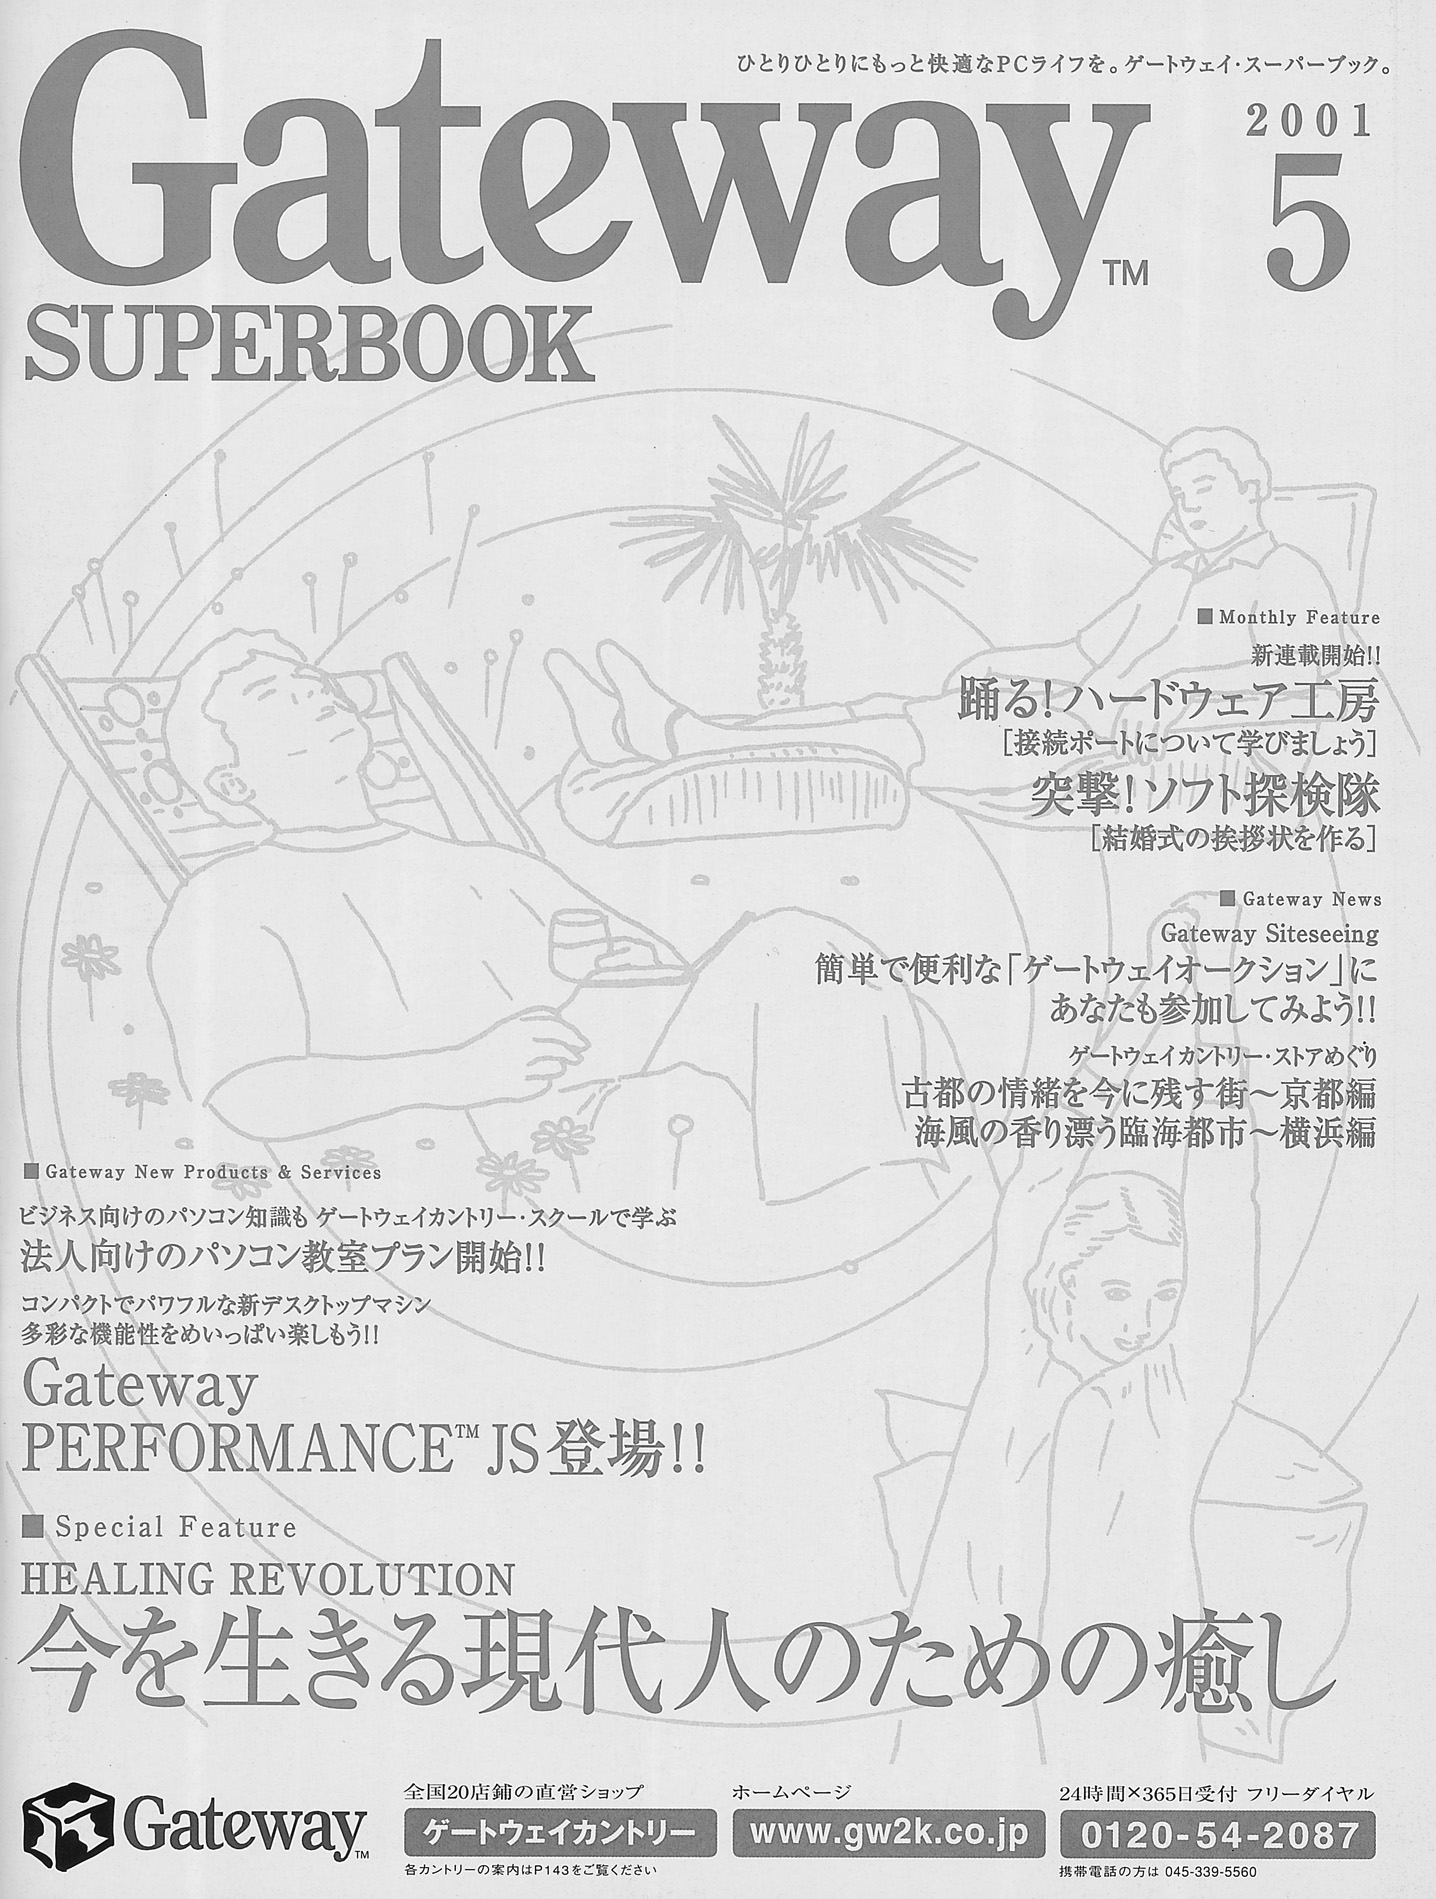 Gateway SUPERBOOK